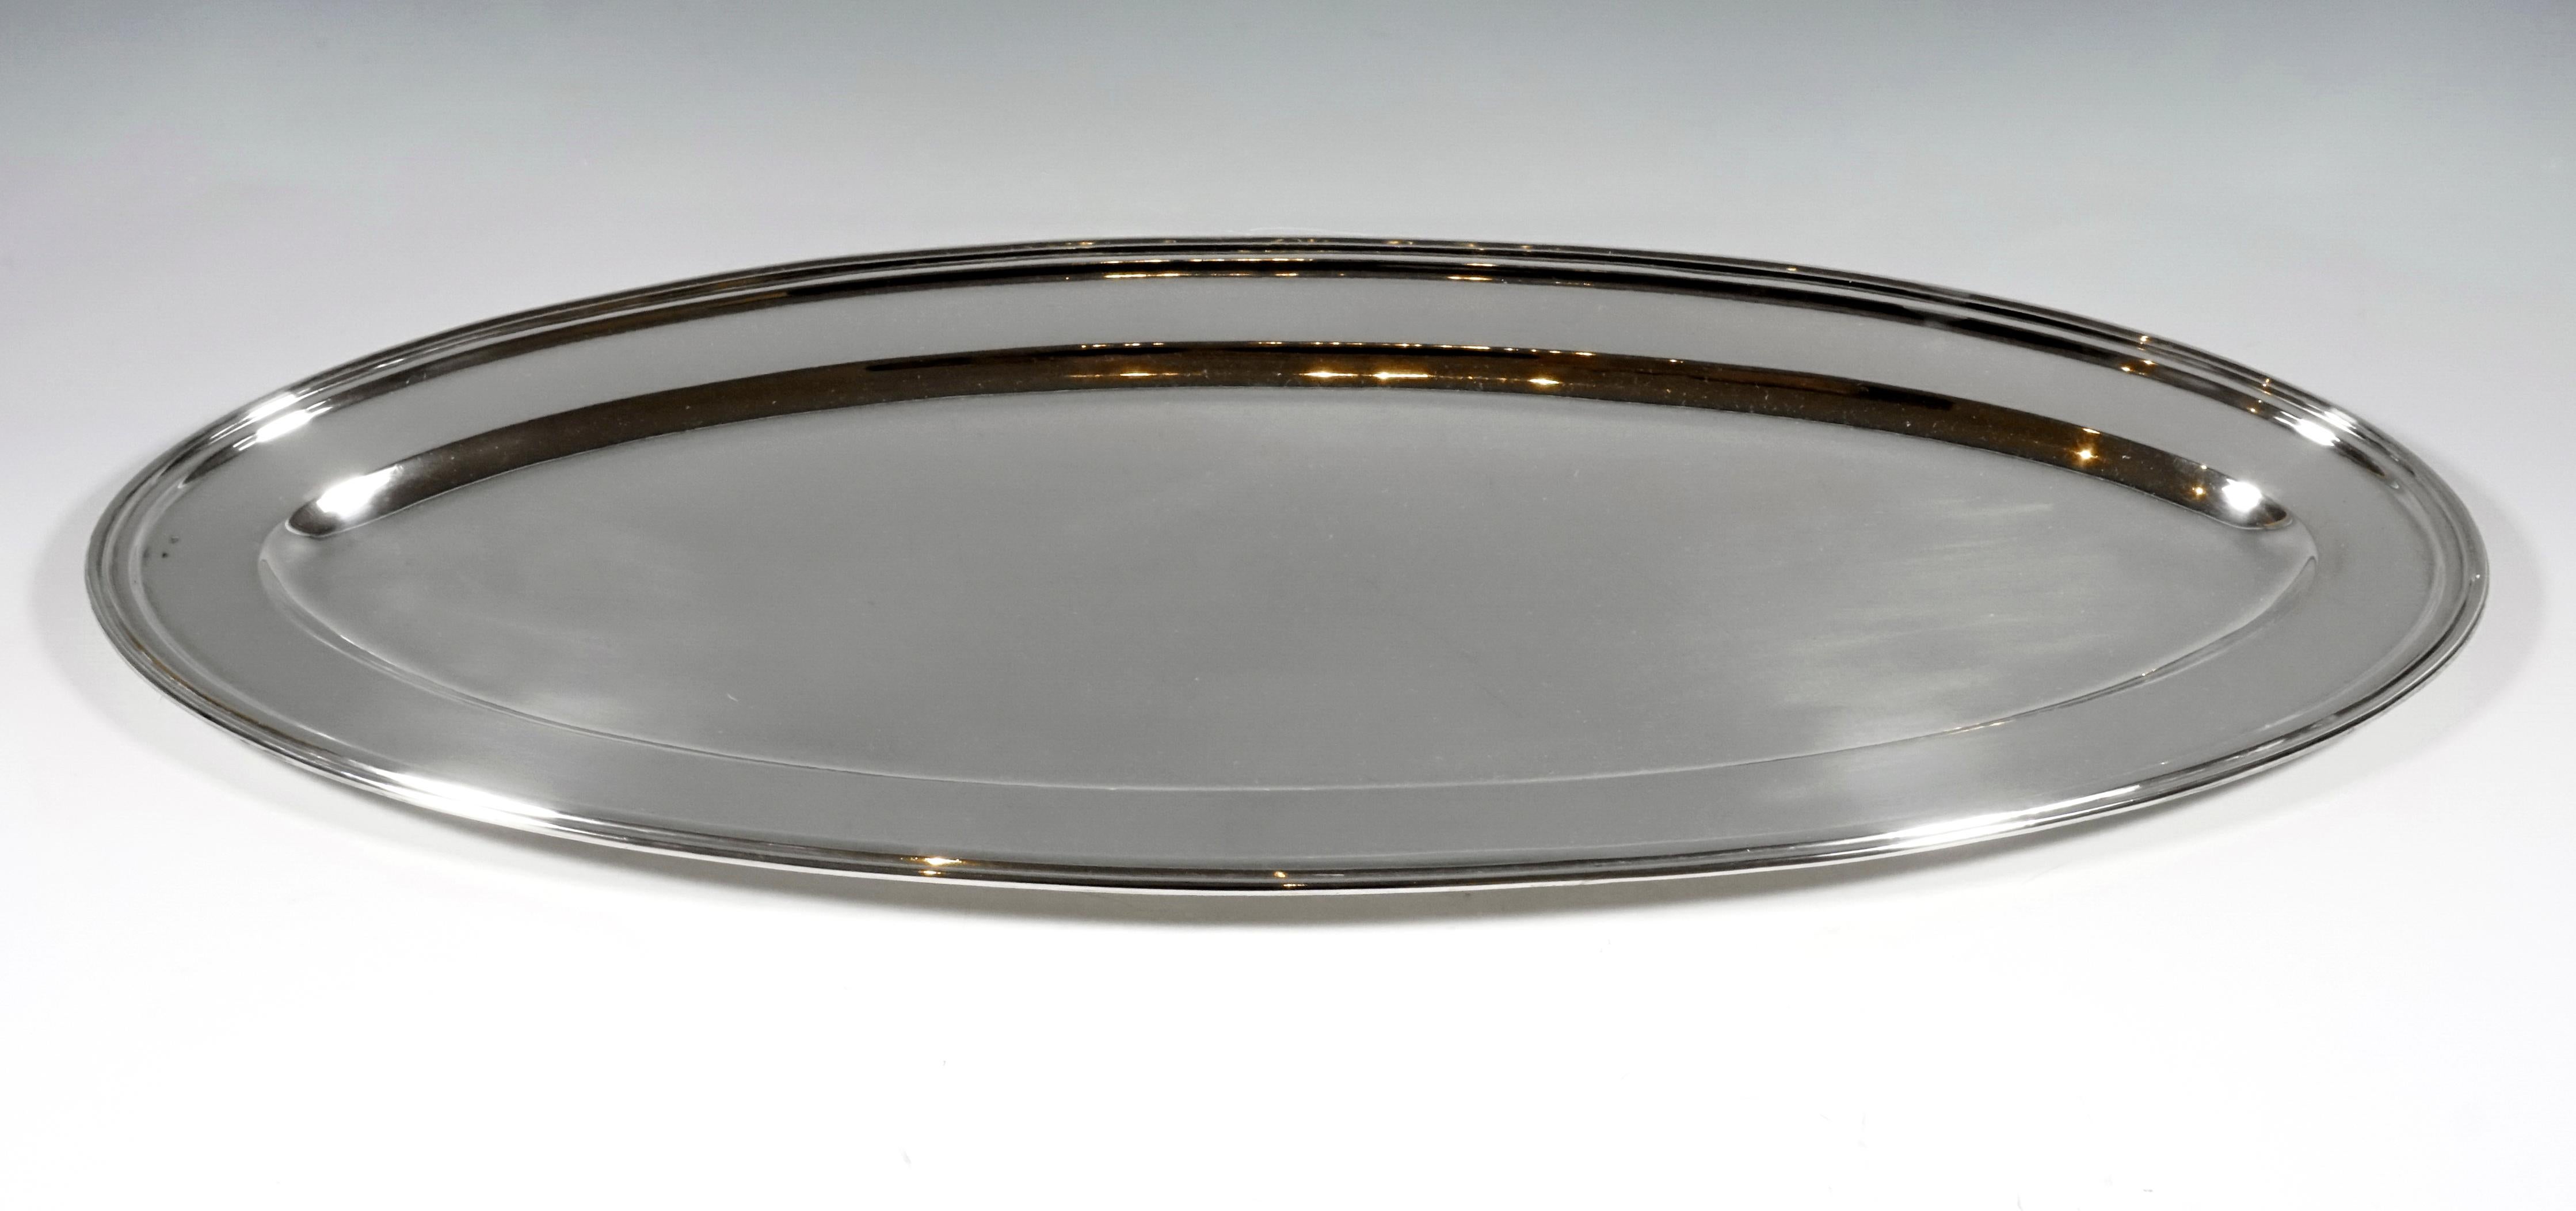 Ovale Silberplatte in glattem, schlichtem Design mit profiliertem Rand.

Gekennzeichnet mit der Dianakopfmarke, der Wiener Amtspunze 1872-1922 für 800 Silber 

Herstellerzeichen: 